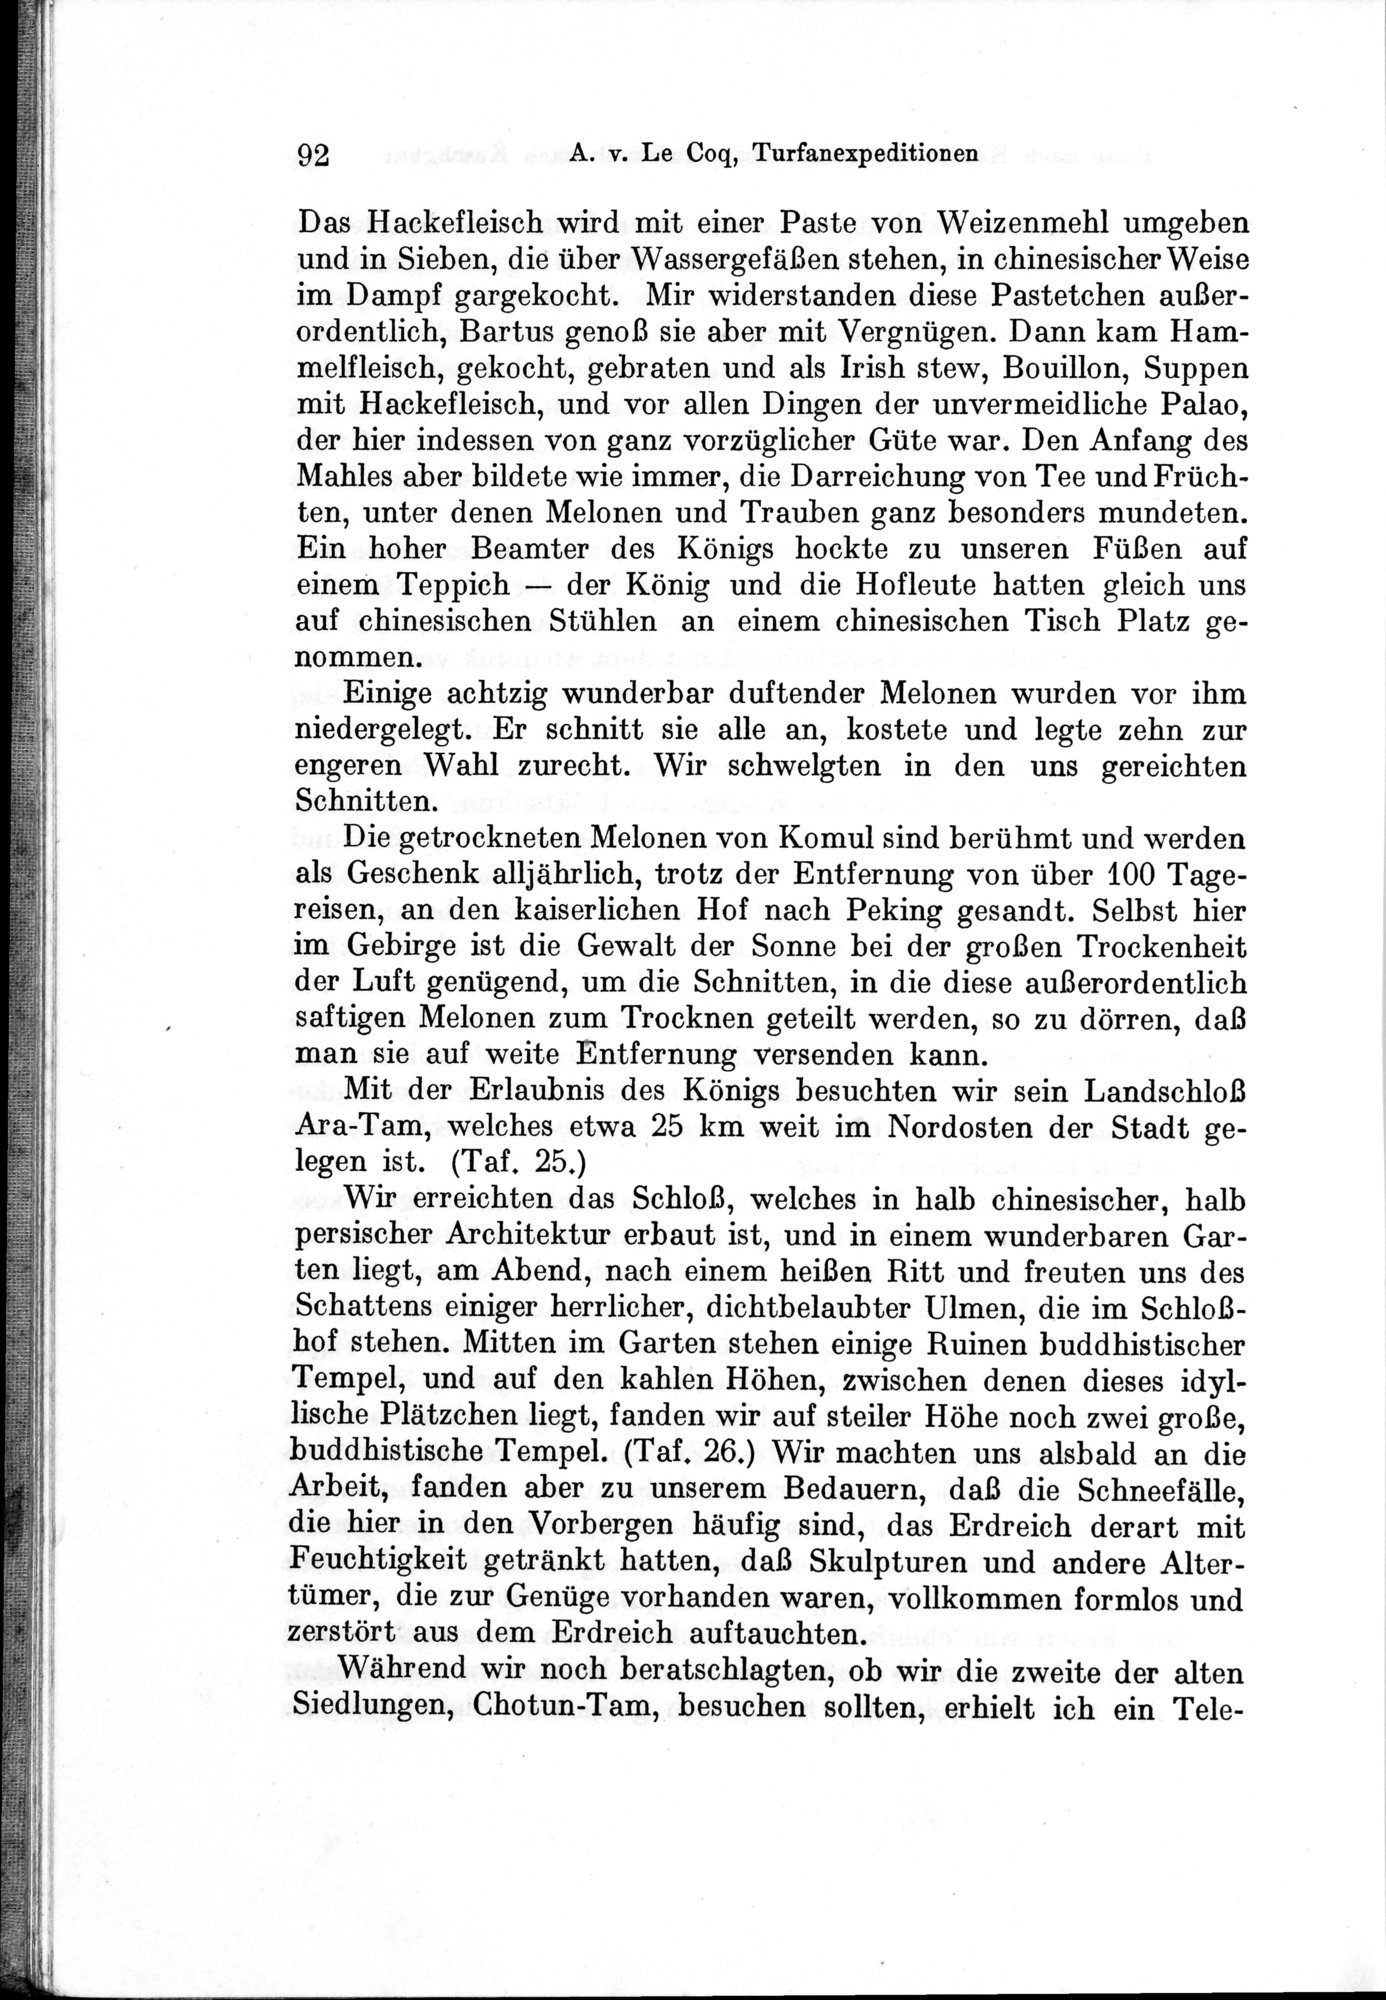 Auf Hellas Spuren in Ostturkistan : vol.1 / Page 136 (Grayscale High Resolution Image)